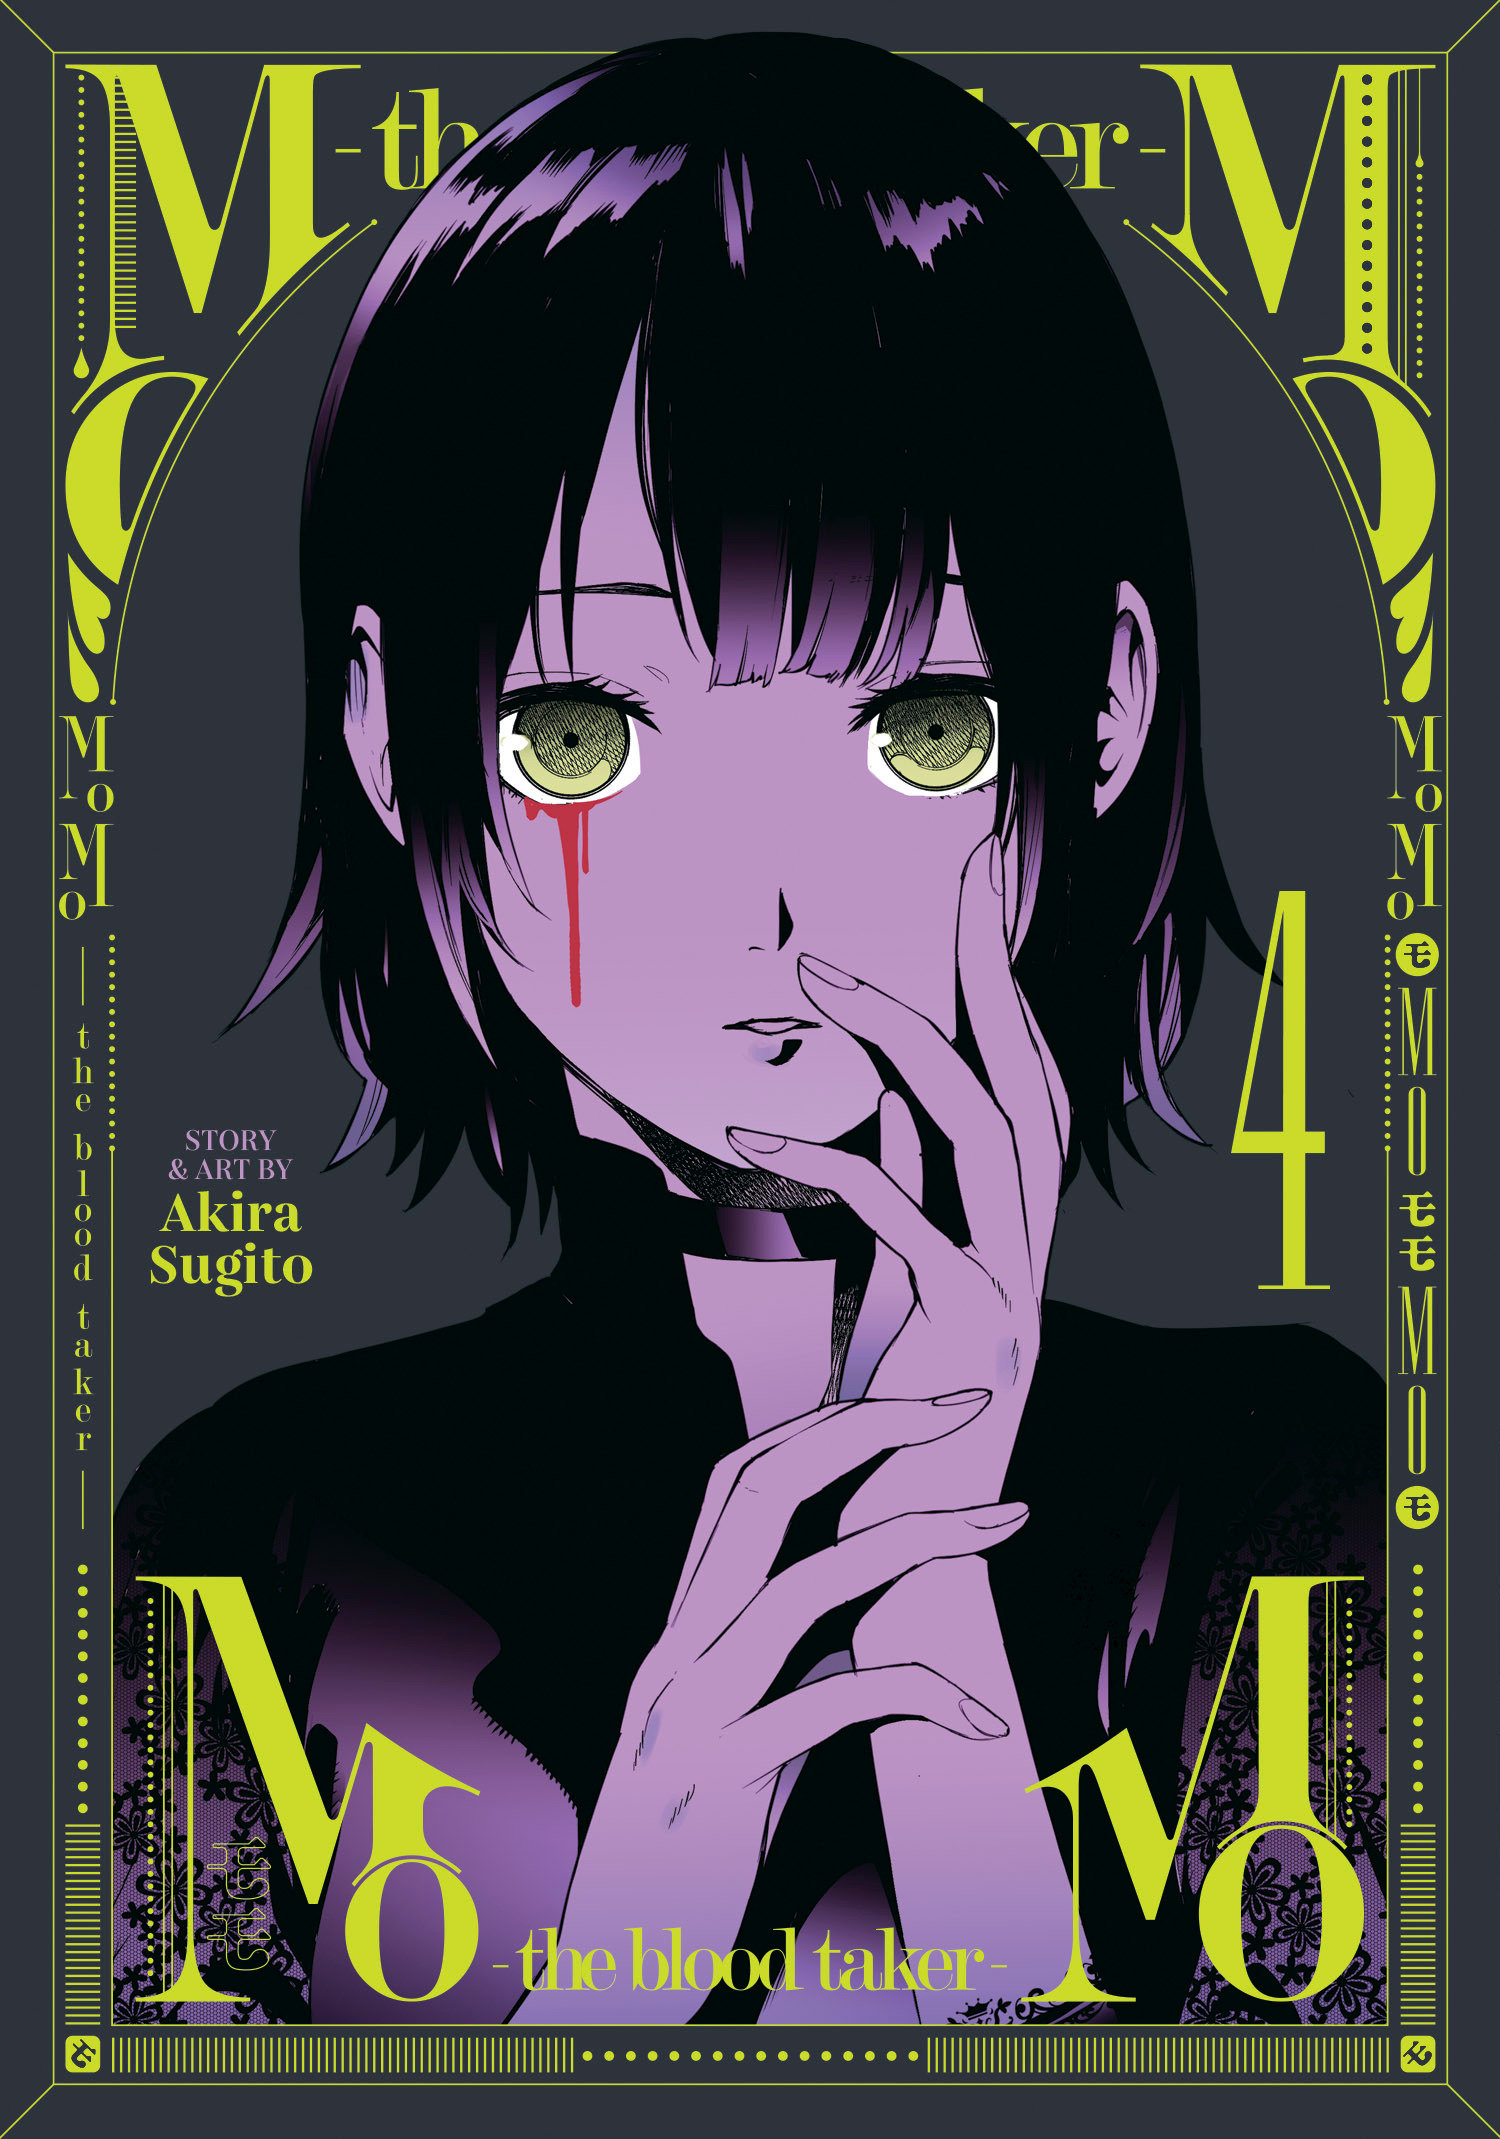 Momo -The Blood Taker Manga Volume 4